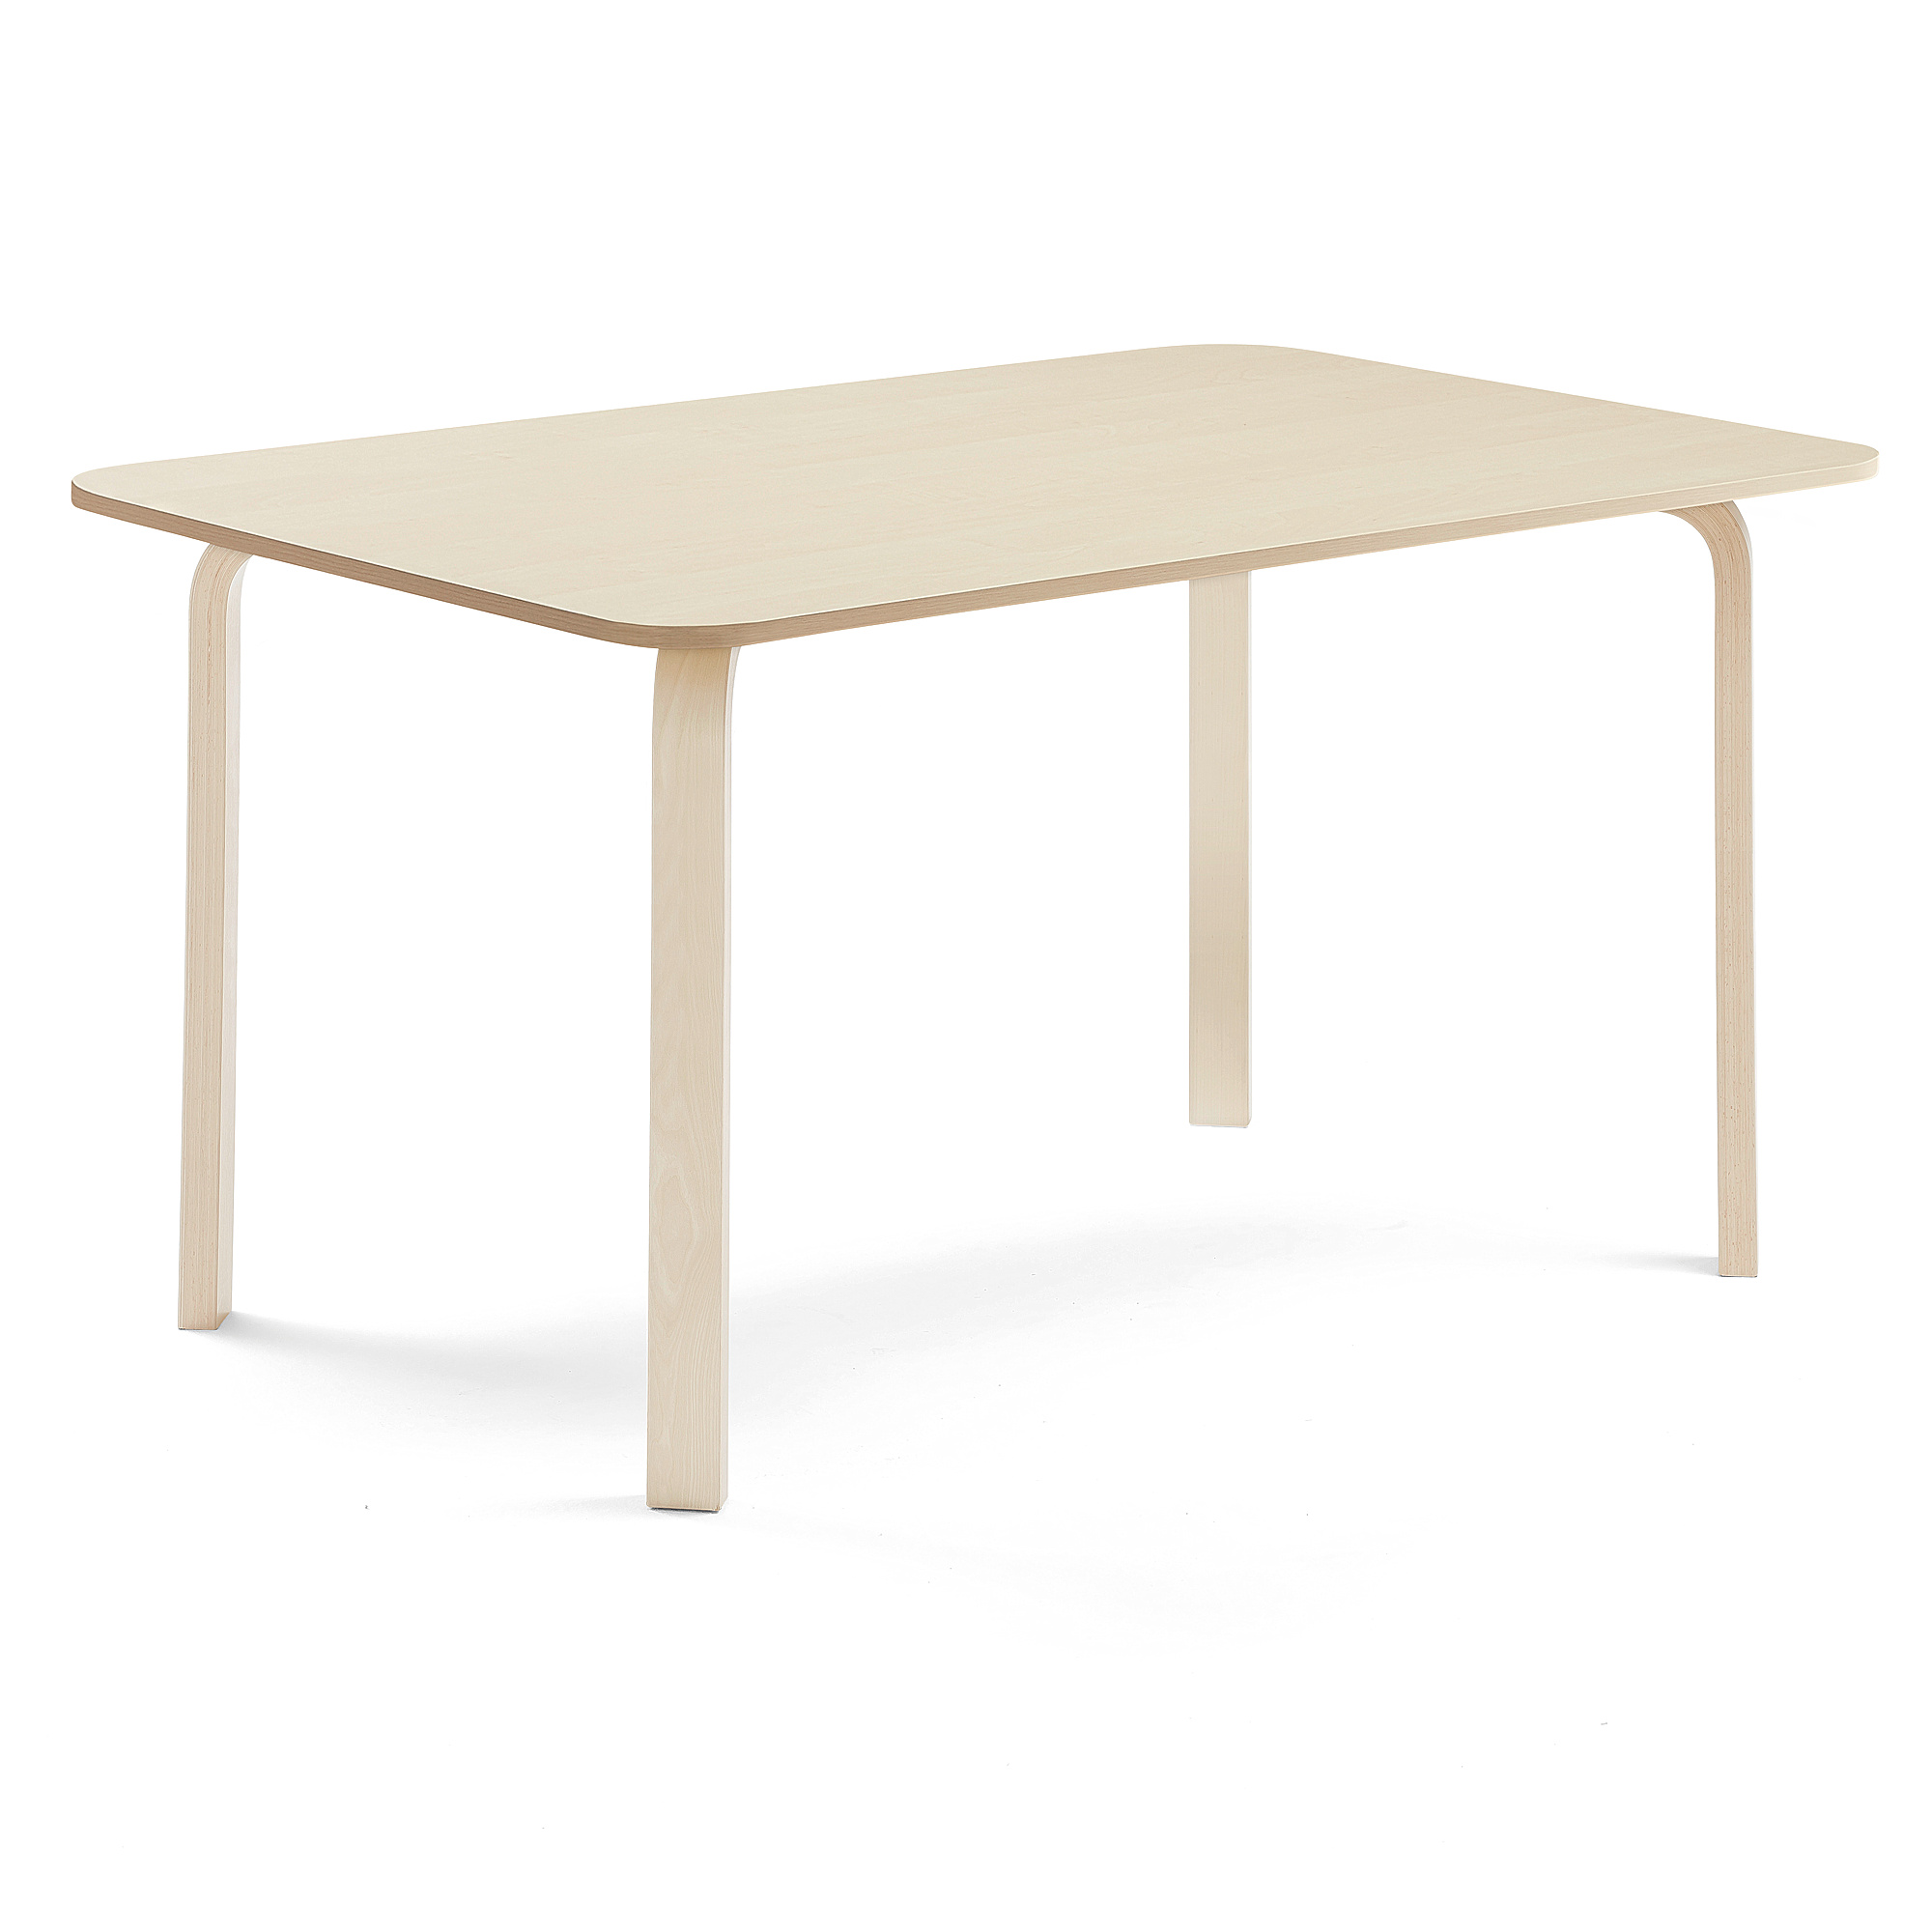 Stůl ELTON, 1800x800x710 mm, bříza, akustická HPL deska, bříza